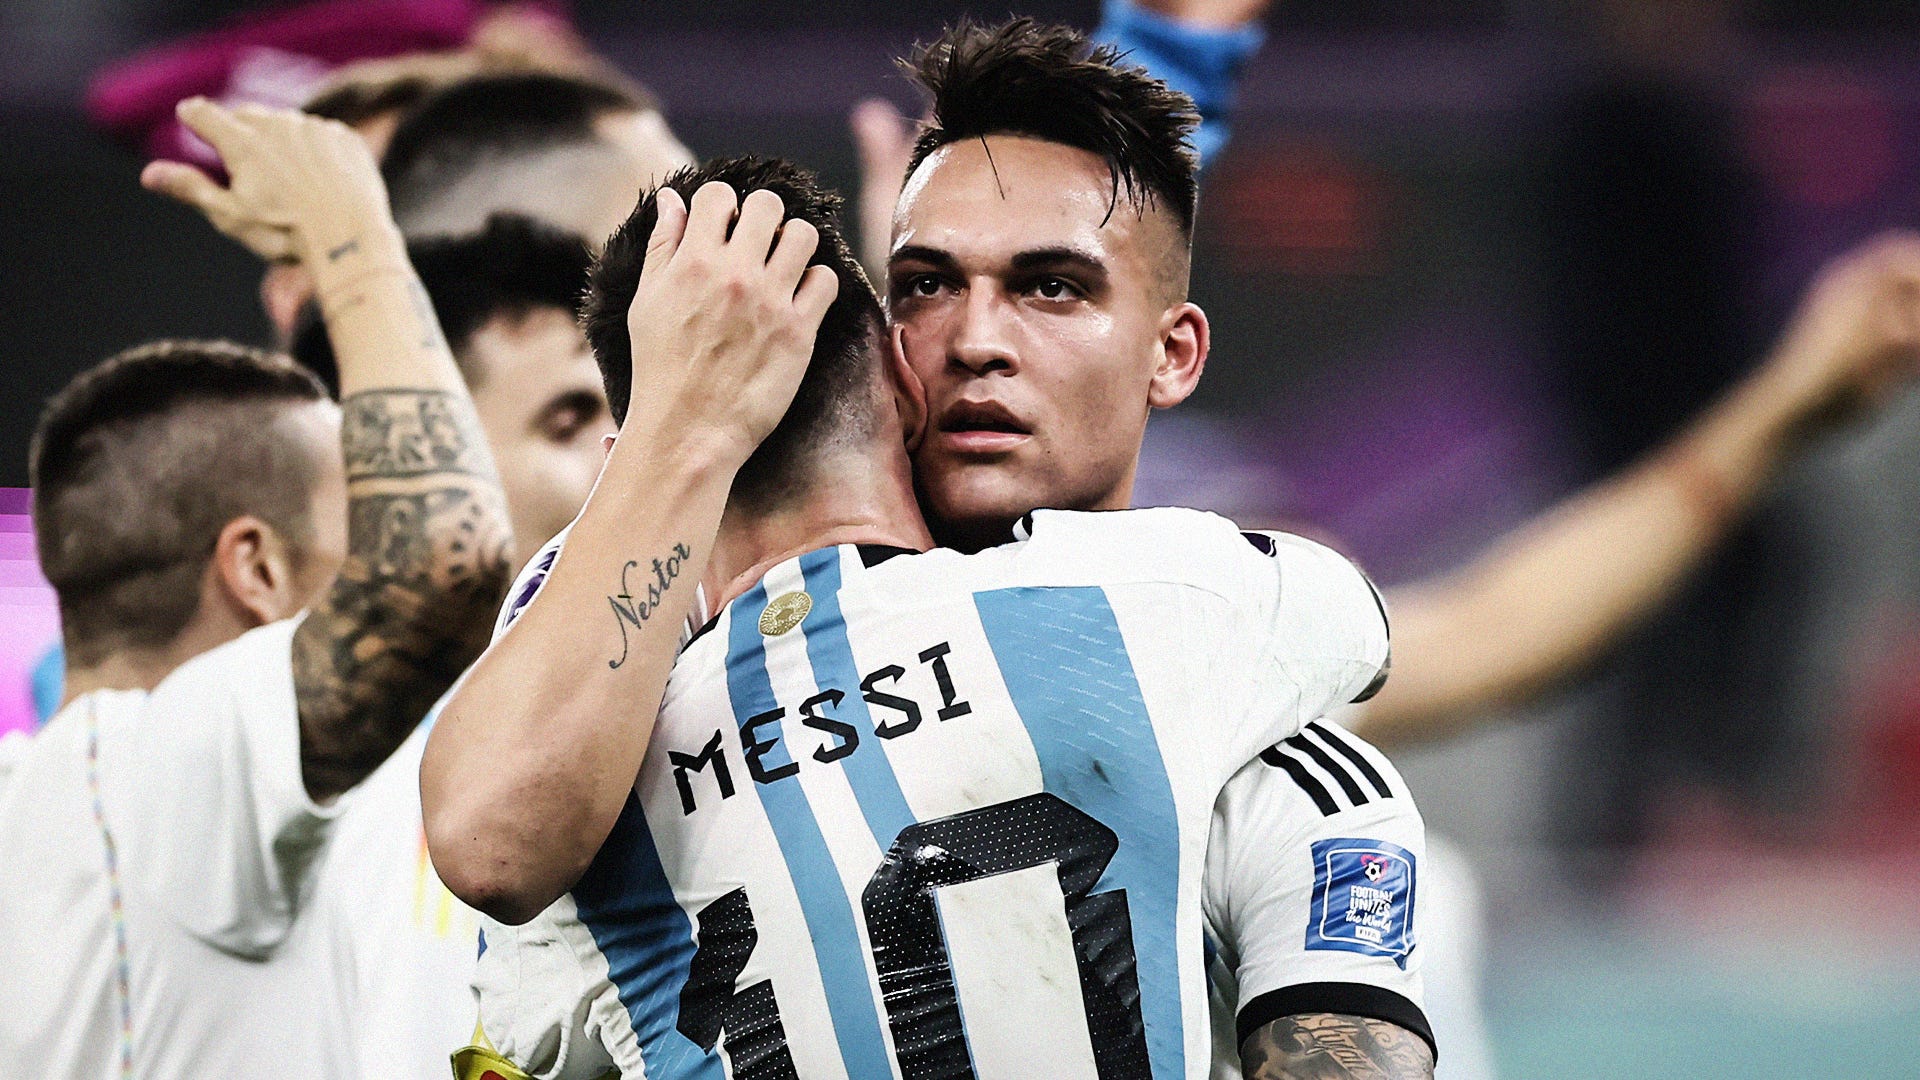 Lautaro Martinez Lionel Messi Argentina 2022 World Cup HIC 16:9